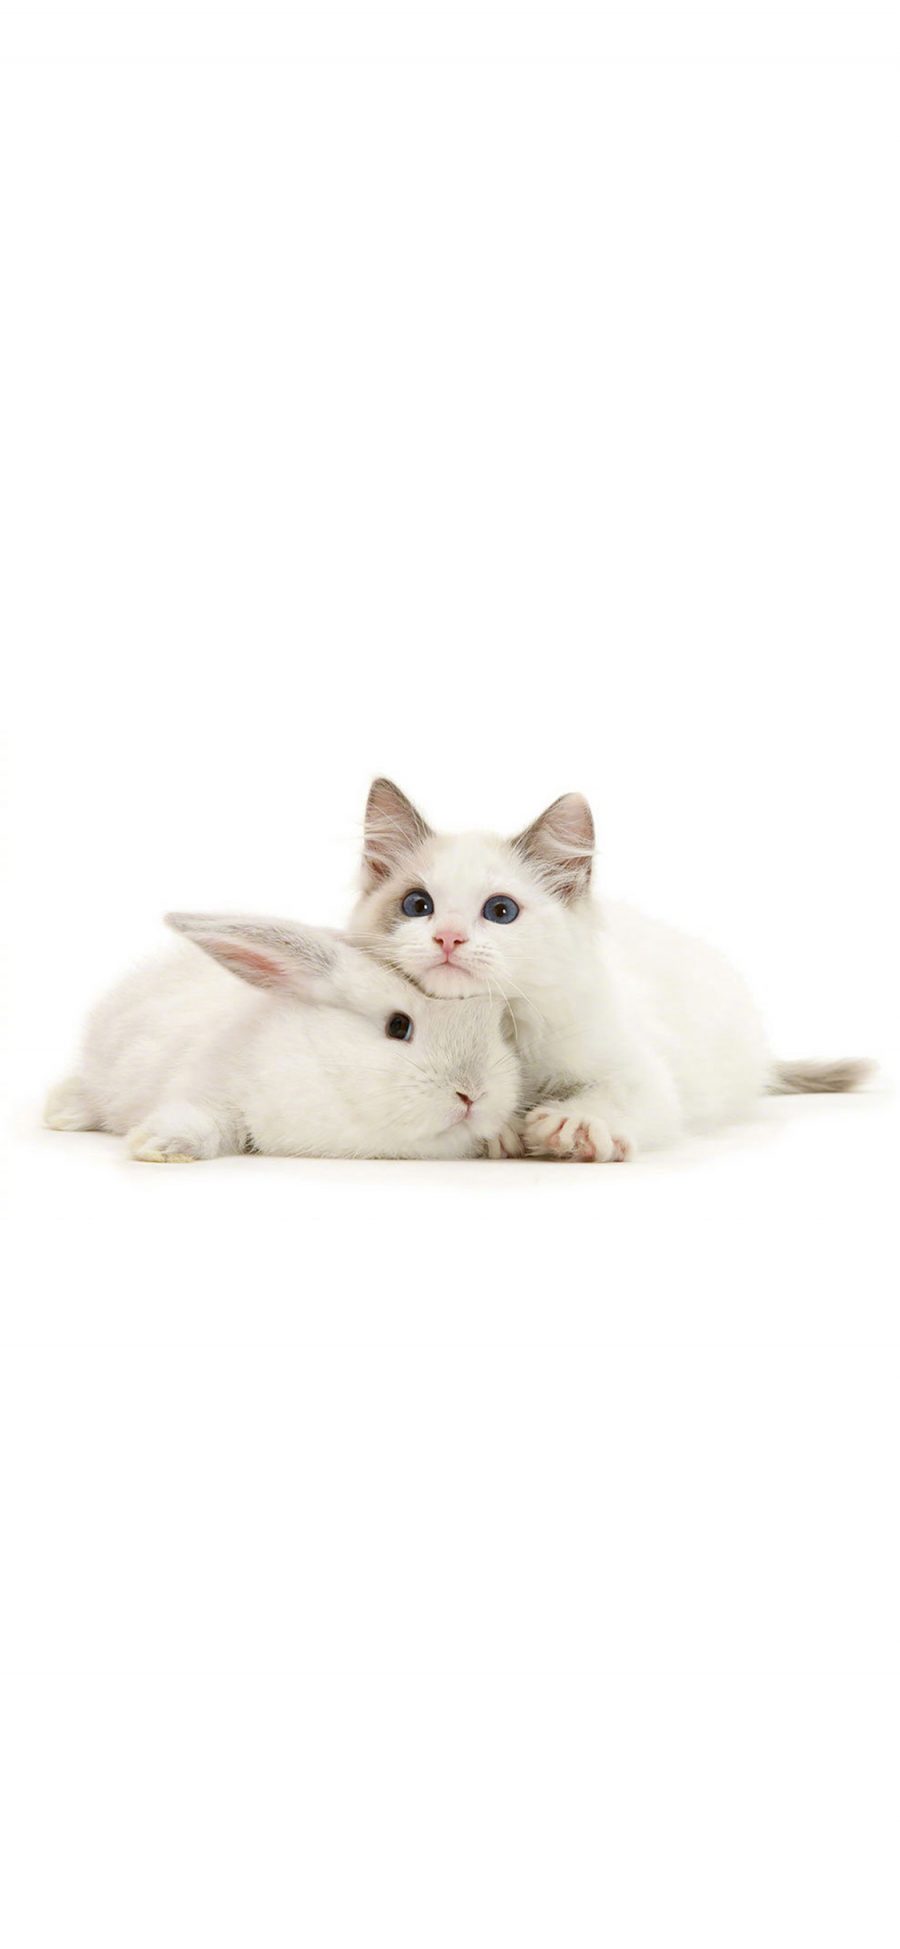 [2436×1125]宠物 萌 小白兔 猫咪 可爱 白色 苹果手机壁纸图片